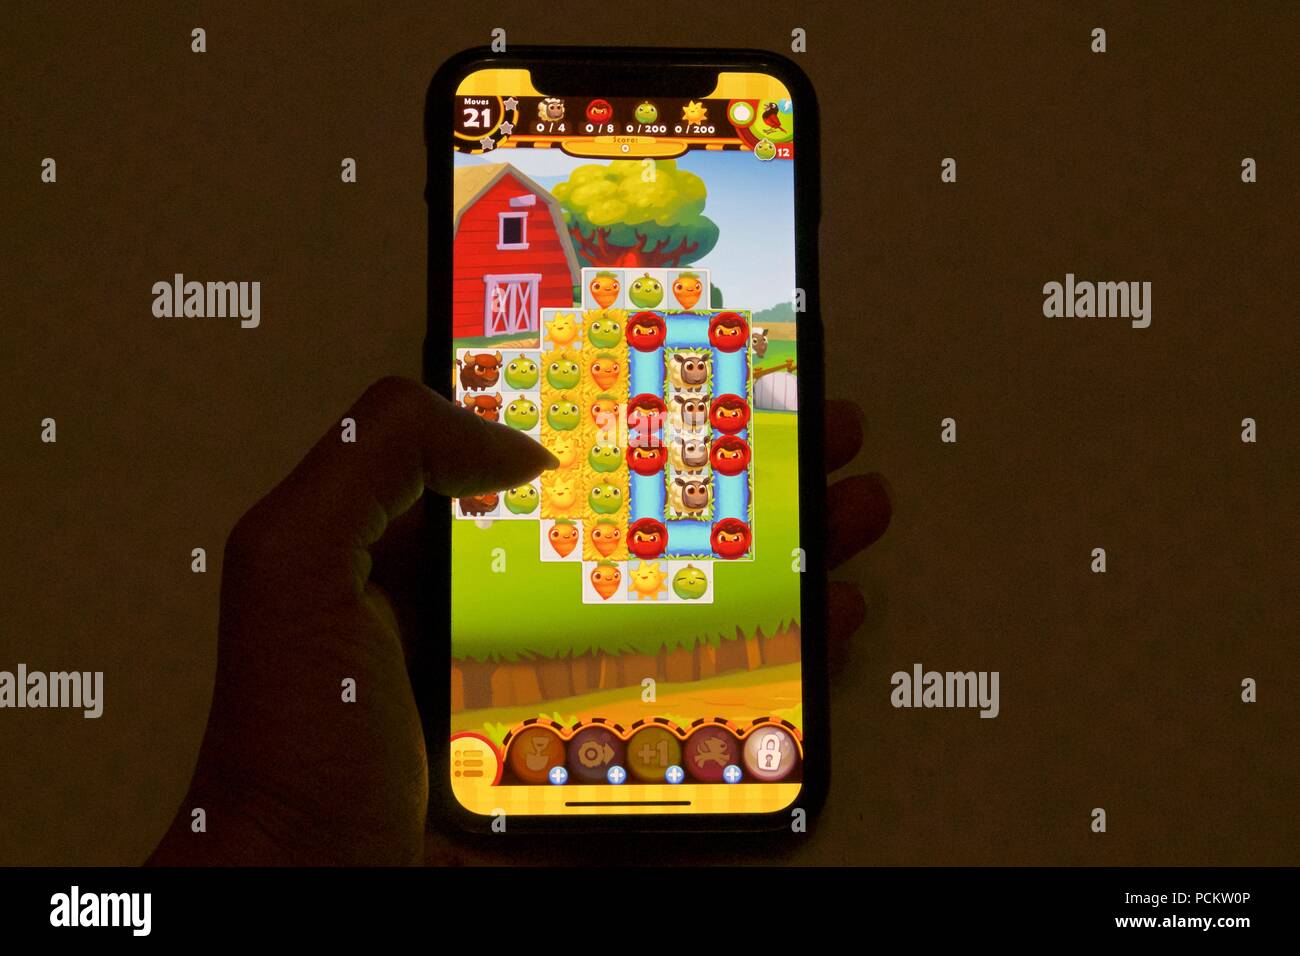 Les héros de la ferme, une saga sur le thème de la ferme jeu de puzzle match 3 fait par le Roi, sur un iPhone X Banque D'Images